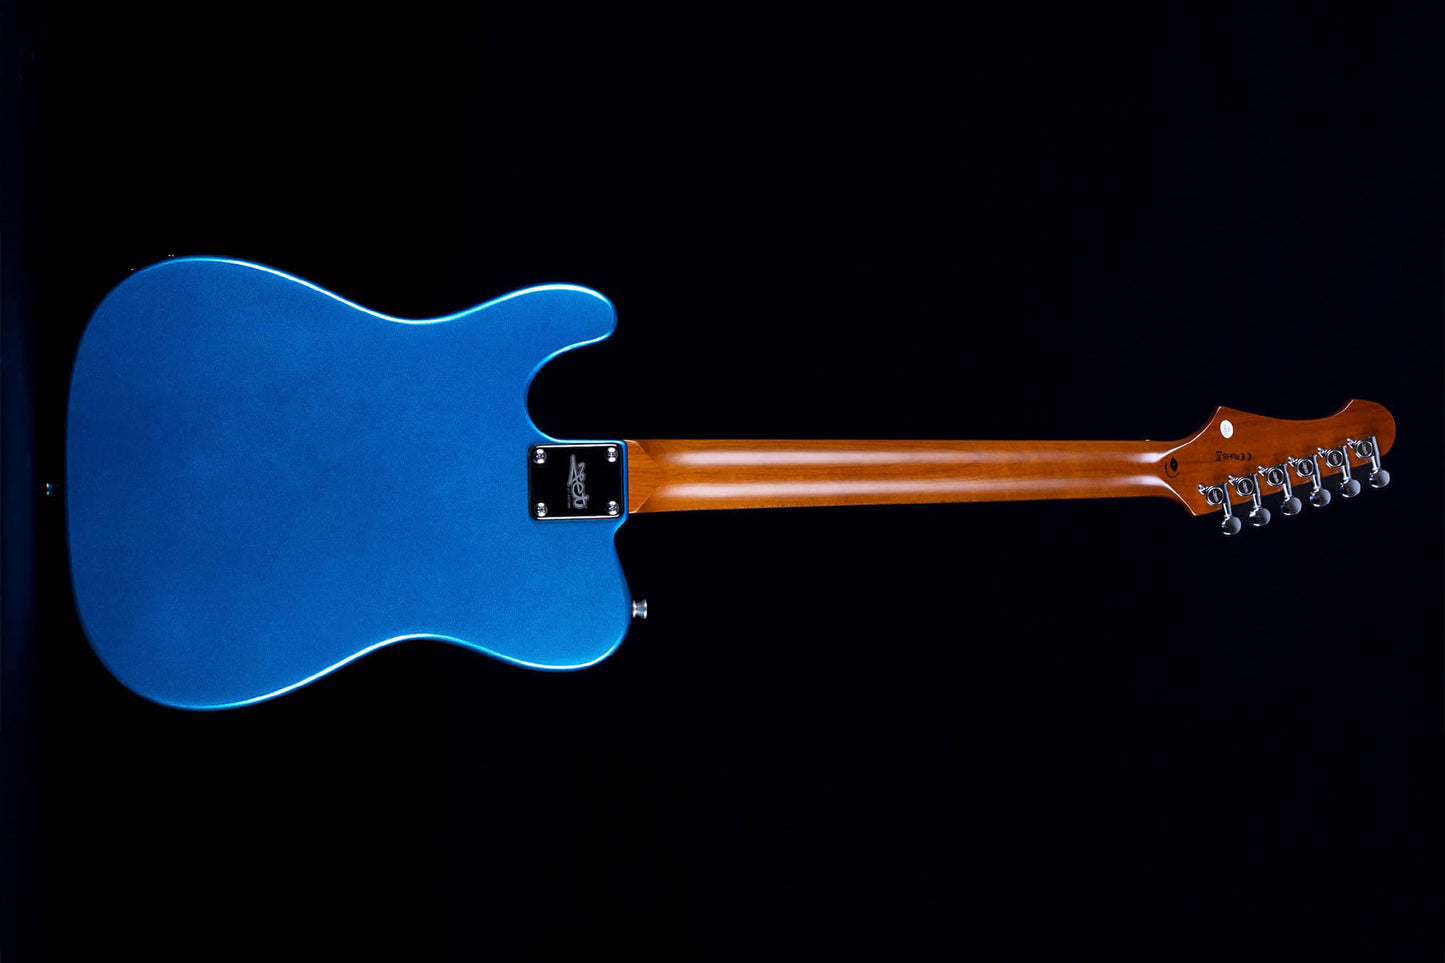 Jet Guitars - JT-300 Lake Placid Blue Electric Guitar